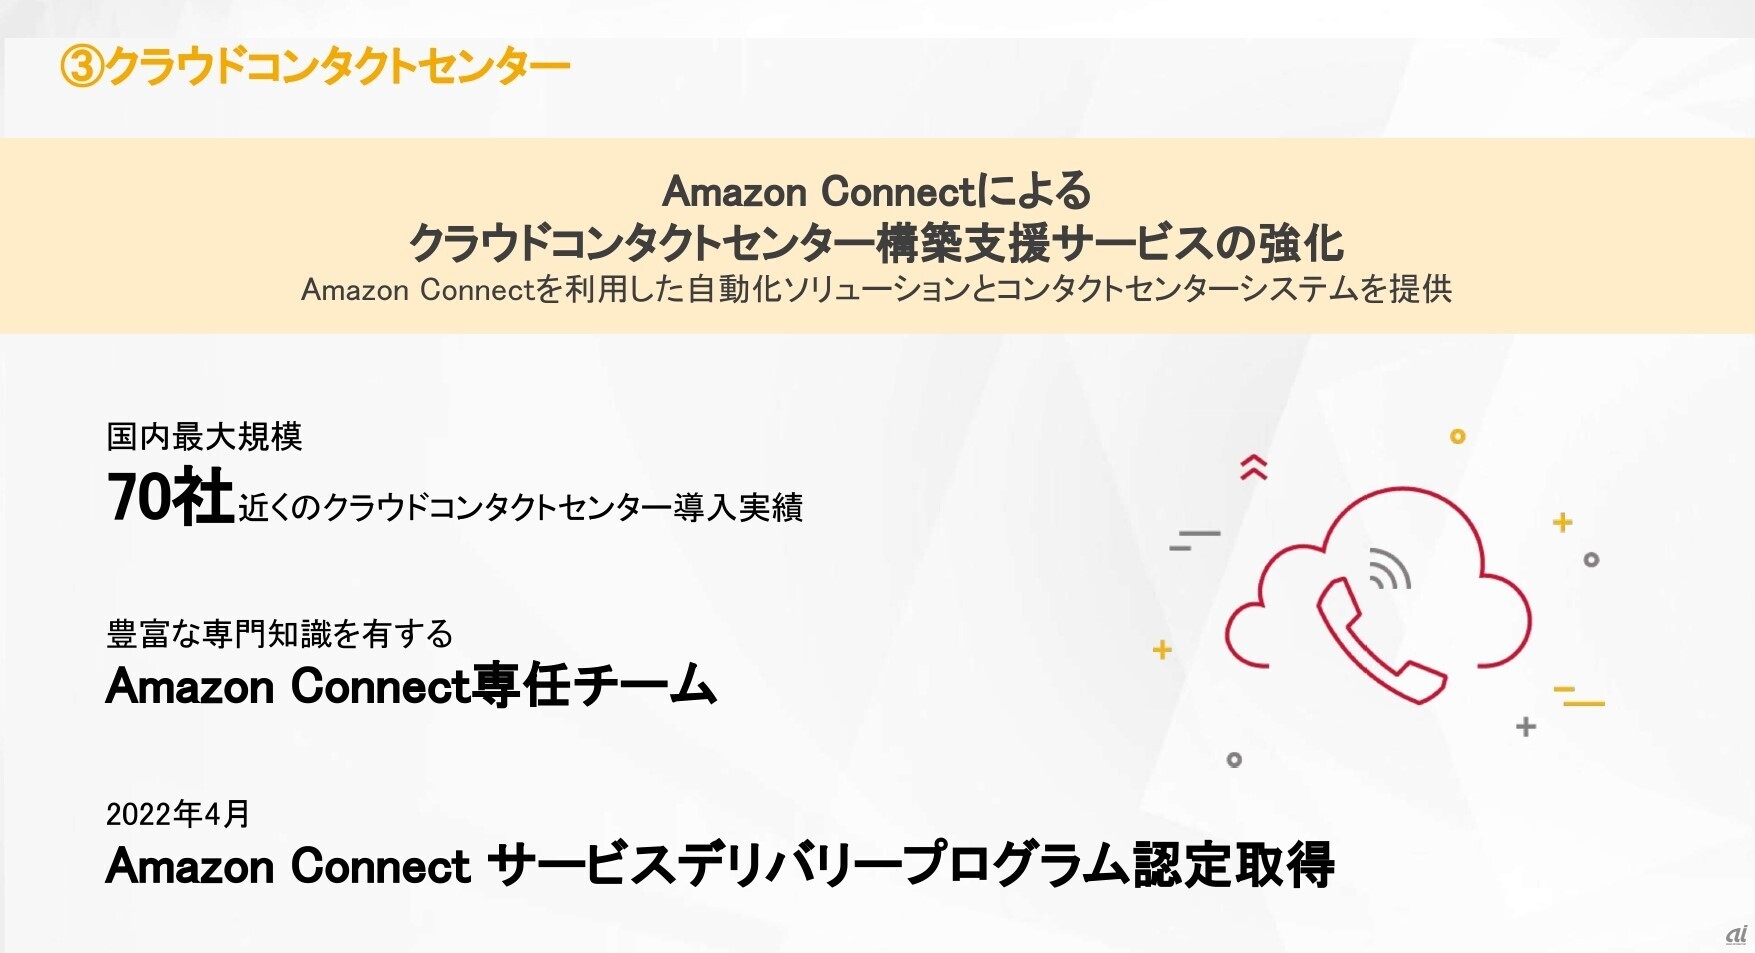 Amazon Connectによるクラウドコンタクトセンター構築支援